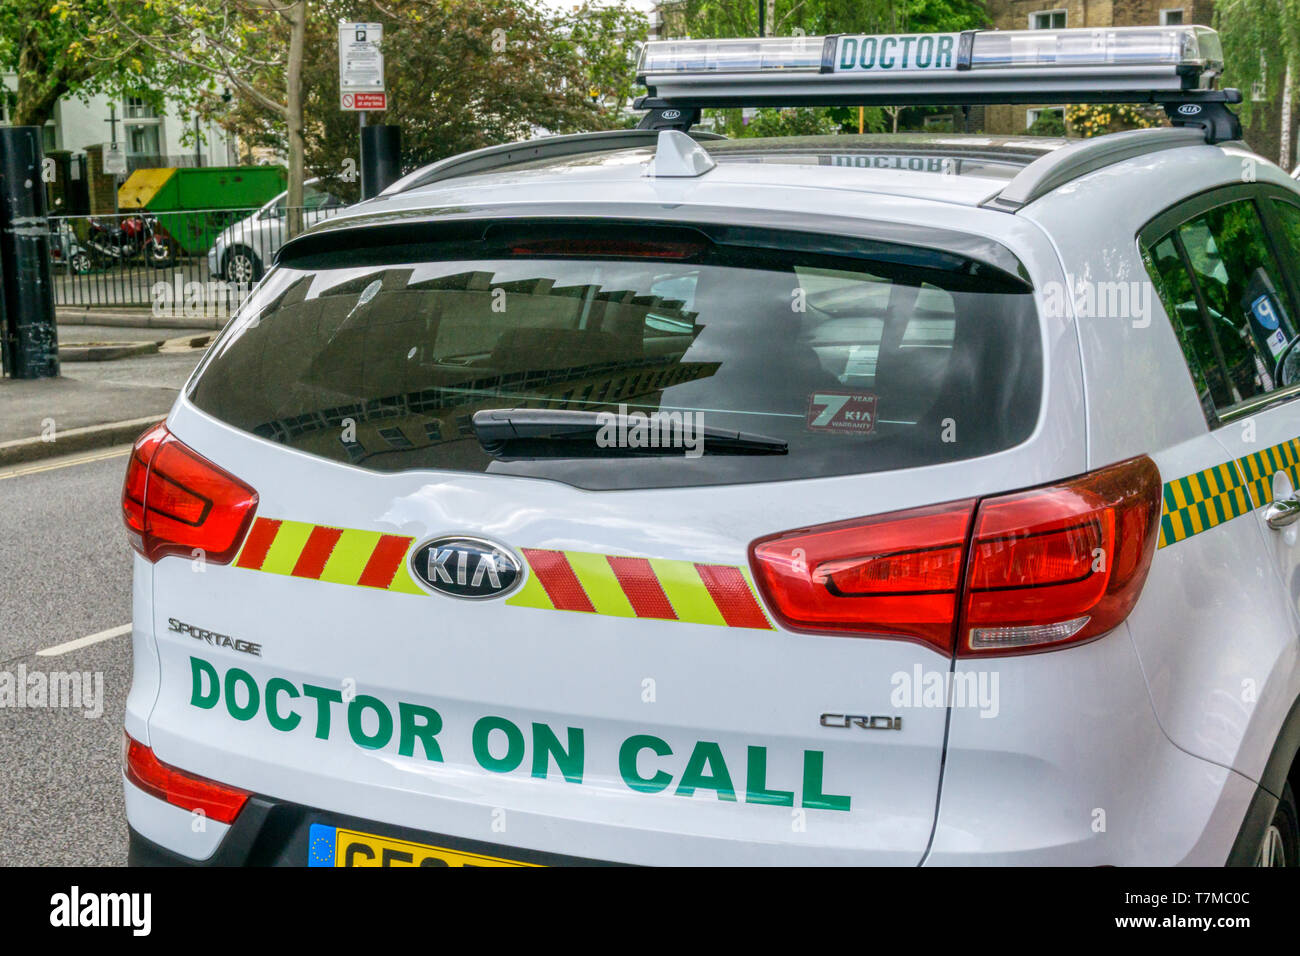 Une voiture du médecin avec un médecin sur appel signe sur l'arrière. Banque D'Images